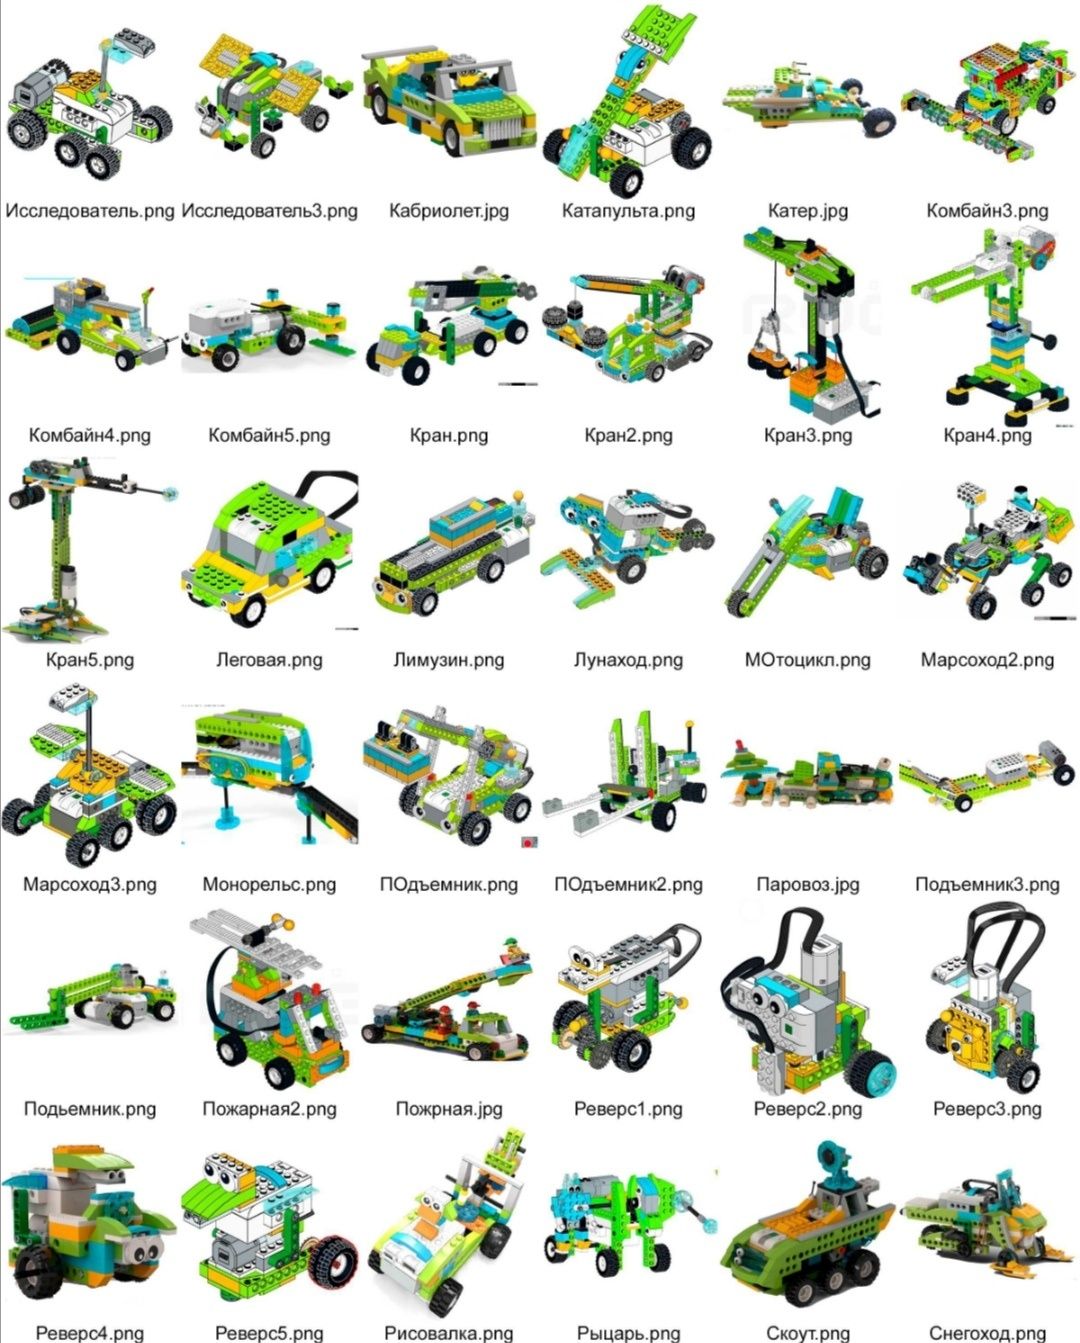 Инструкция Lego wedo 2.0 pdf формате 500+шт